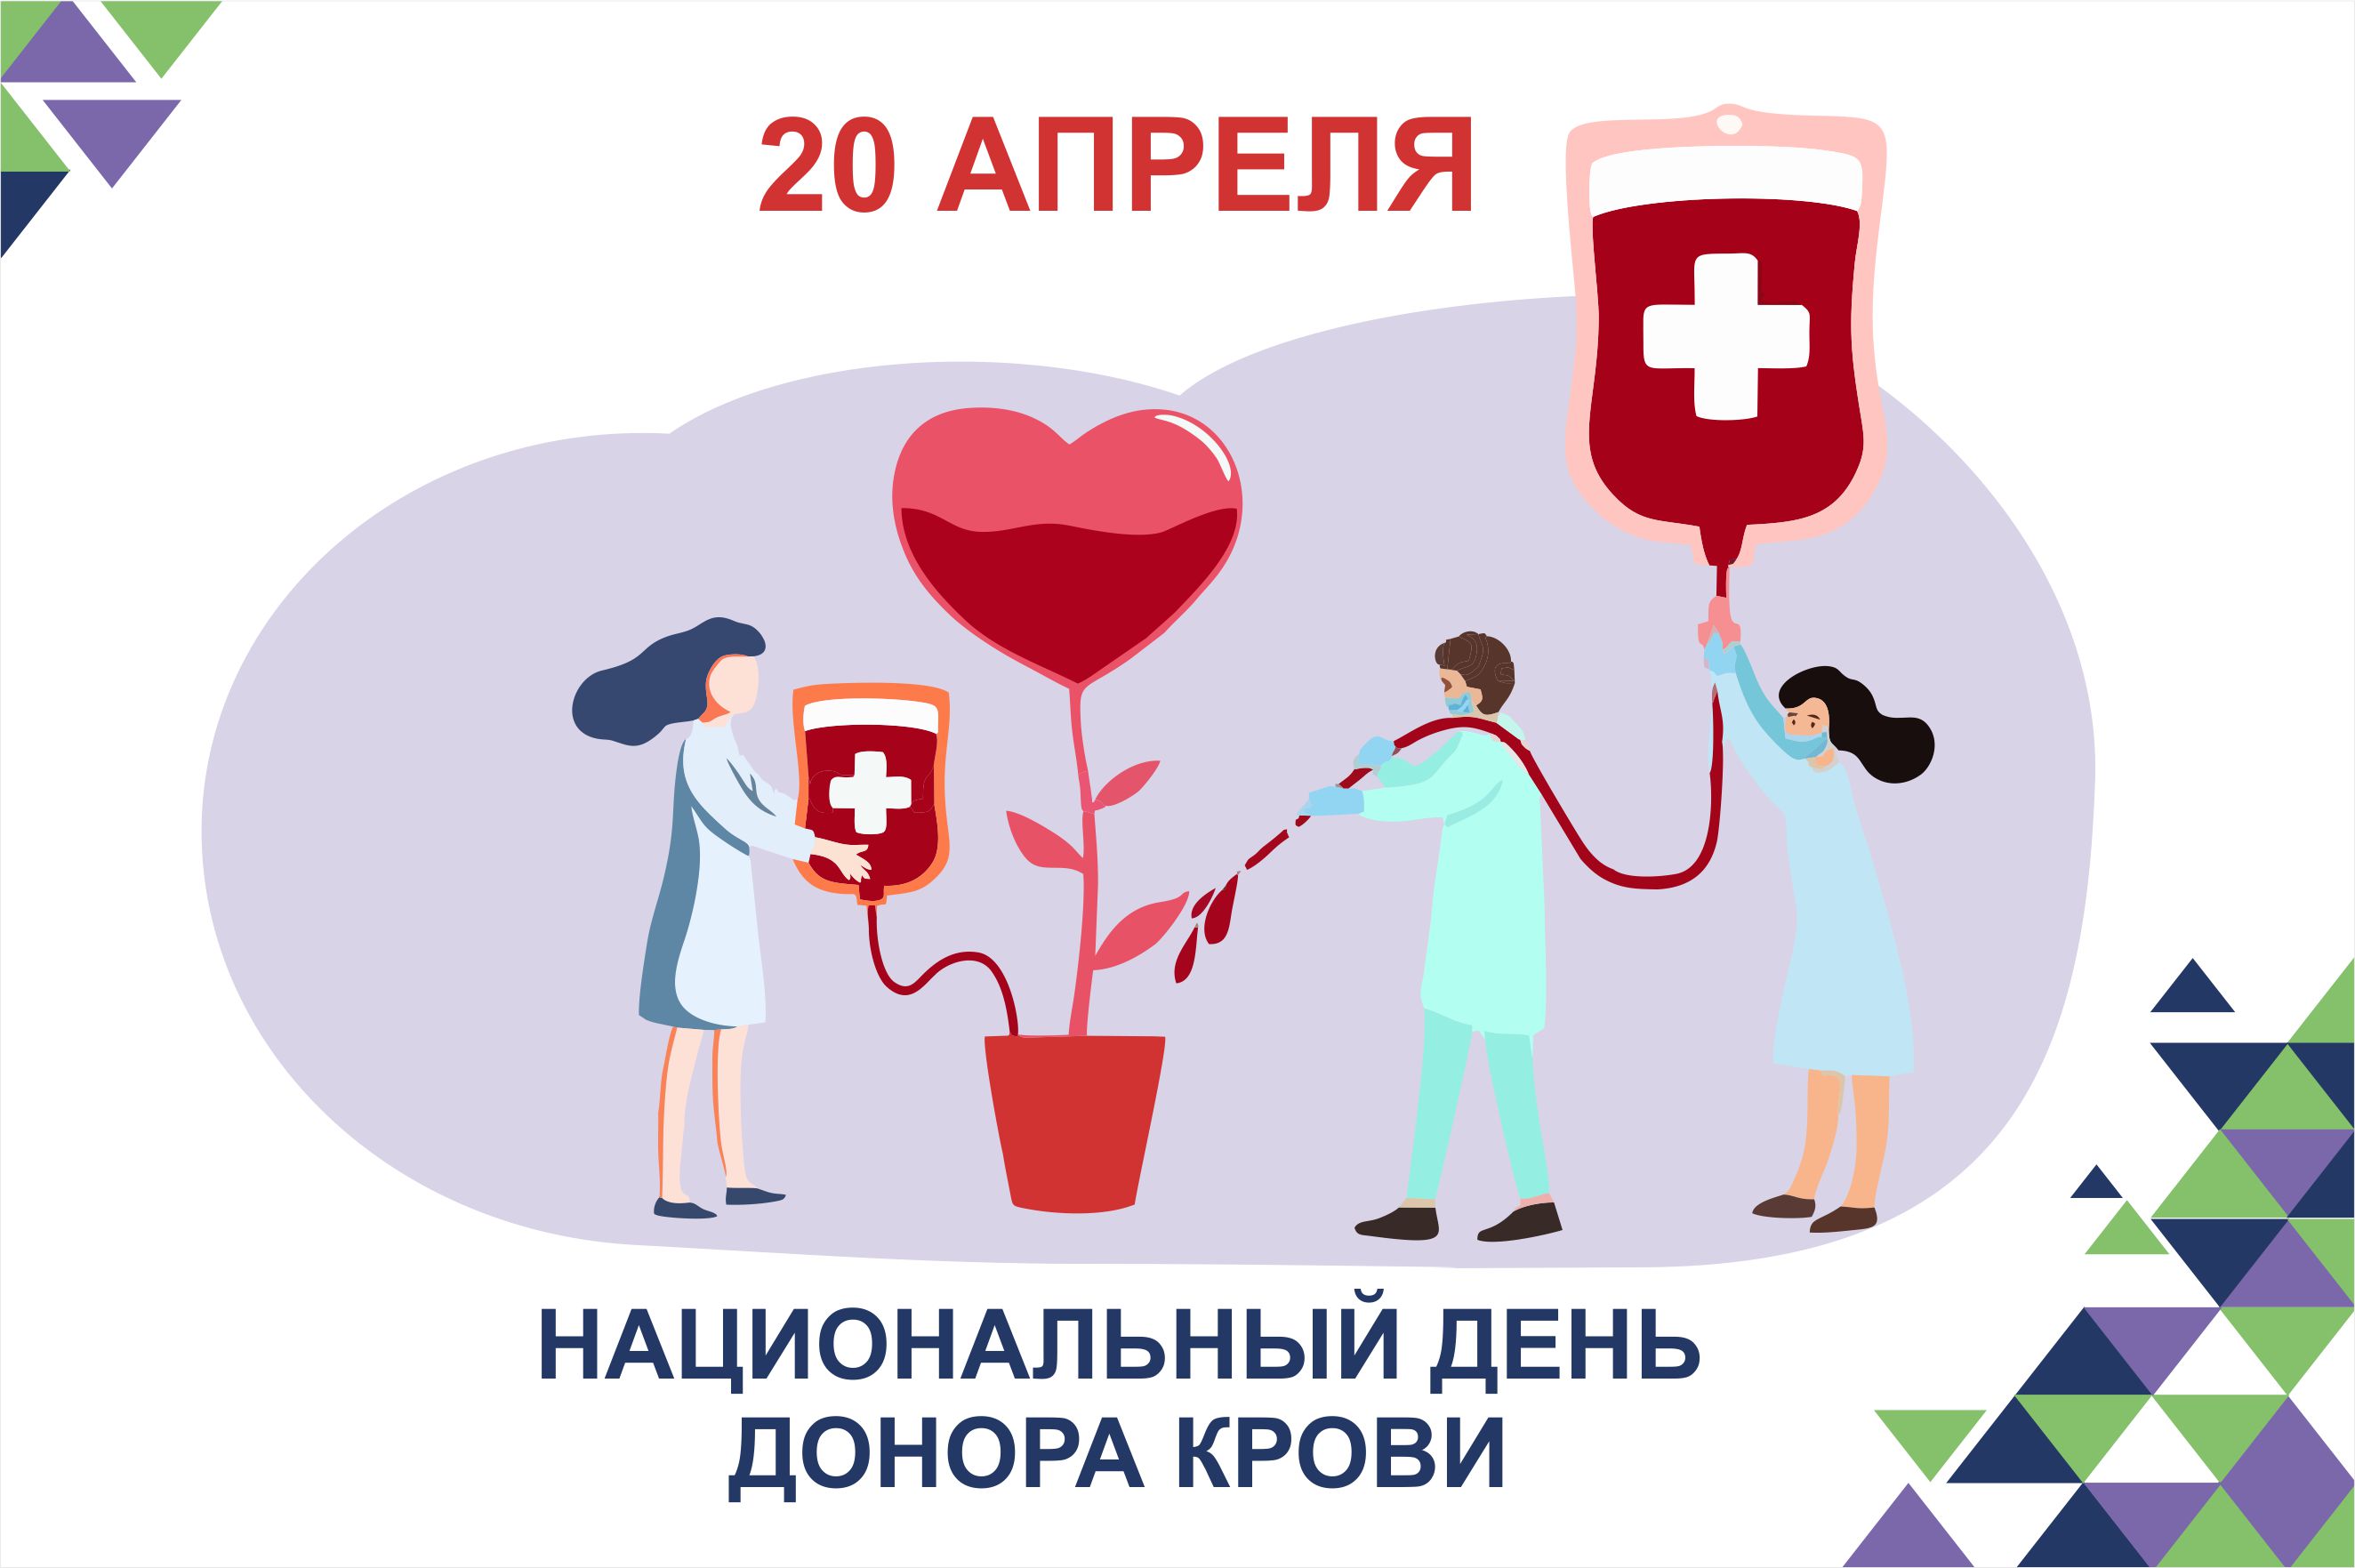 20 апреля национальный день донора в россии. 20 Апреля день донора. Быть донором здорово. Сосновоборск день донора.